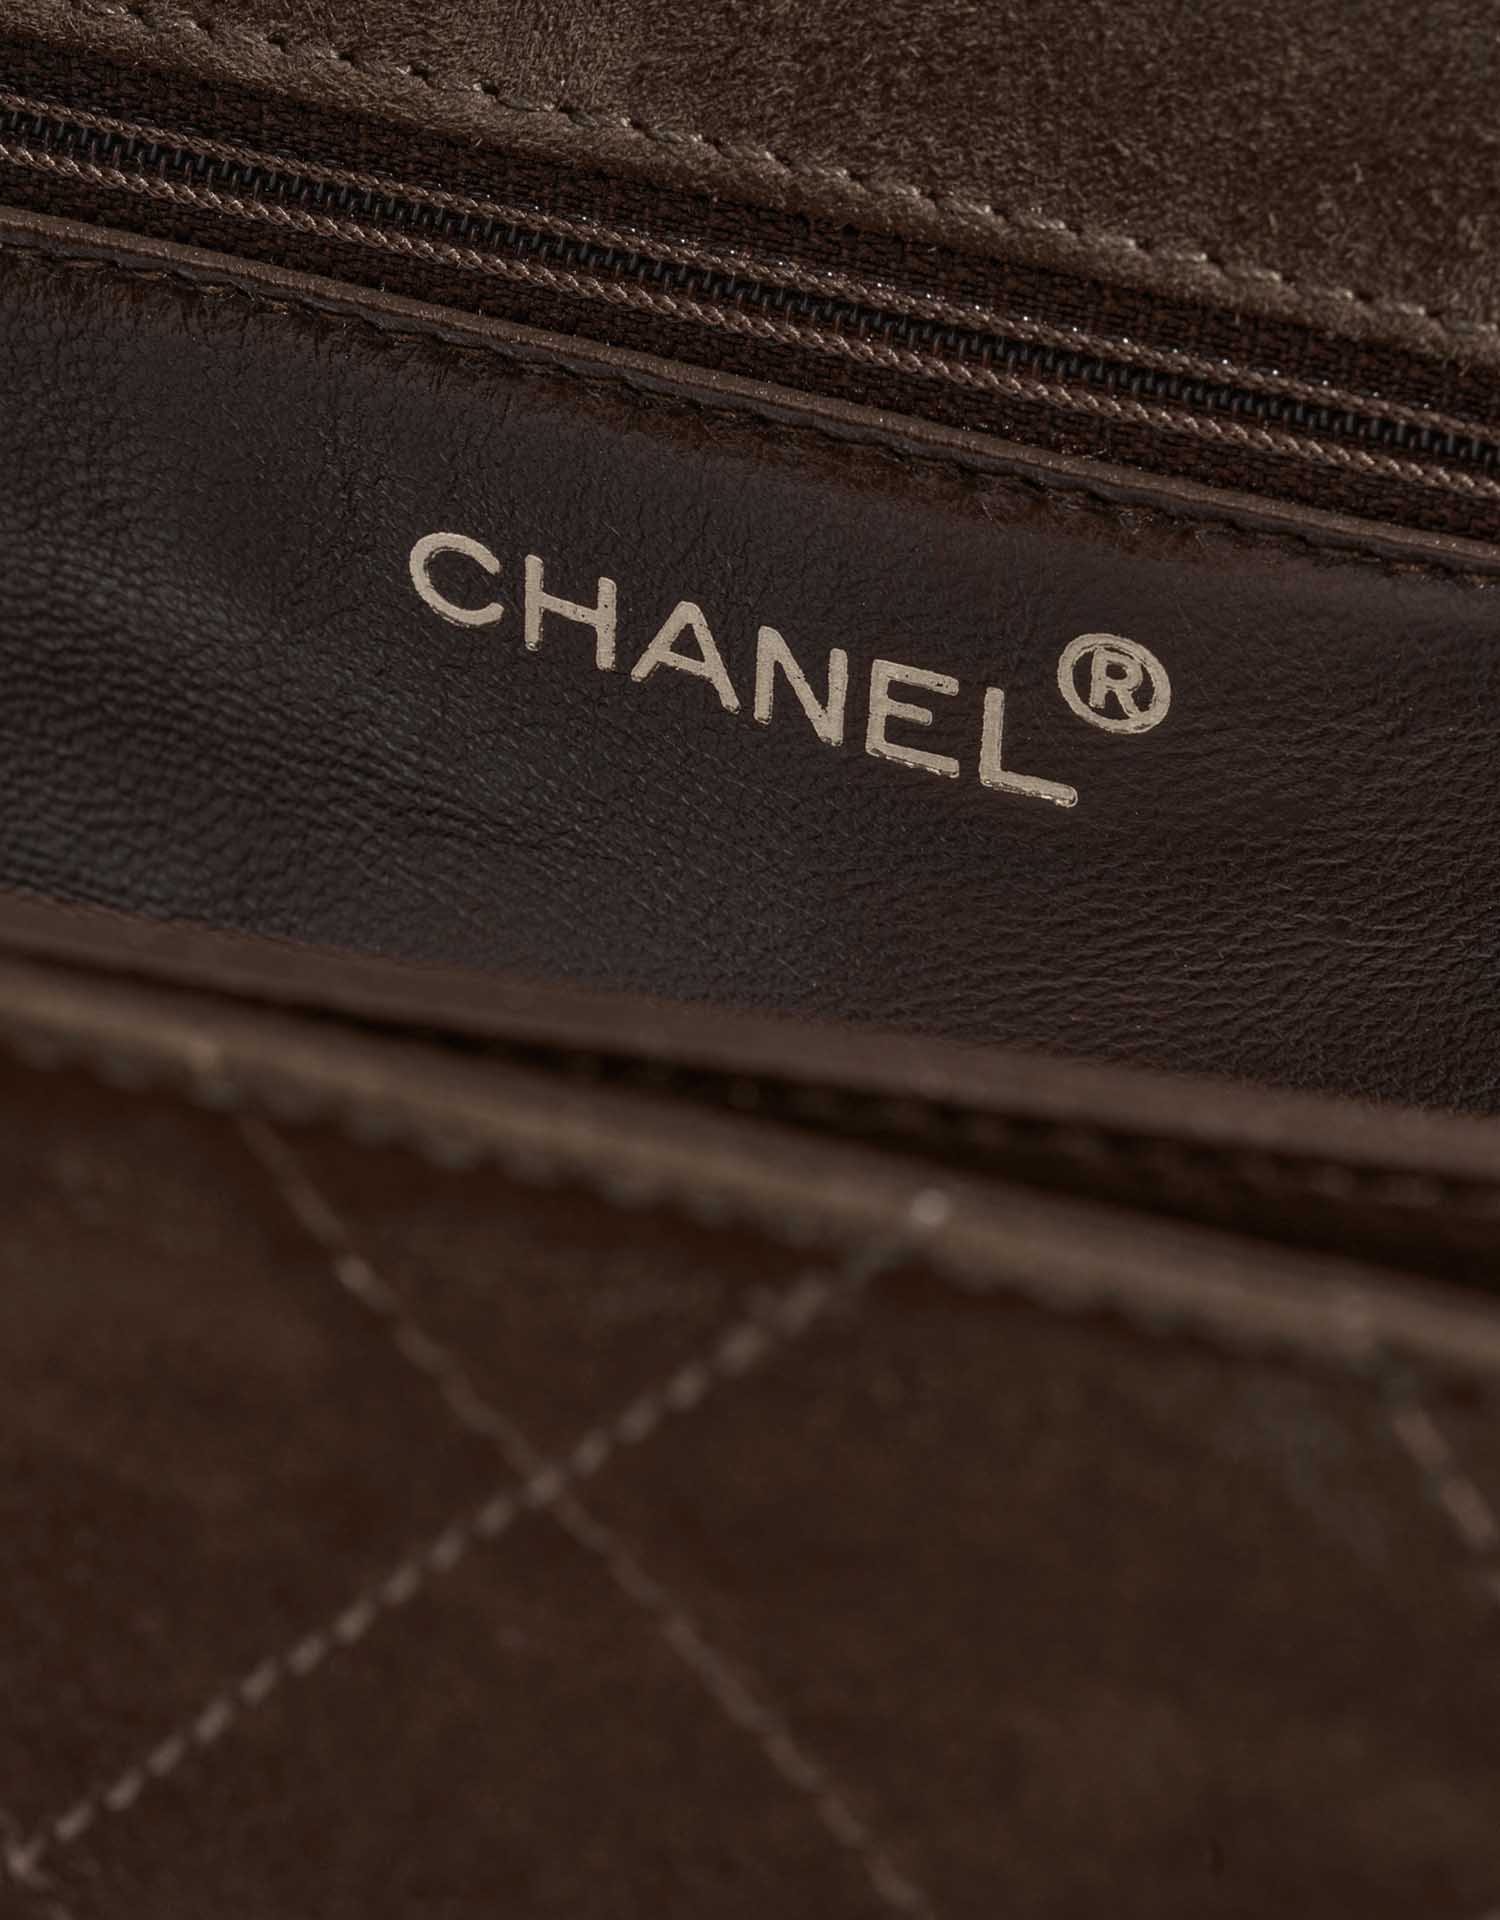 Chanel Timeless Logo marron | Vendez votre sac de créateur sur Saclab.com